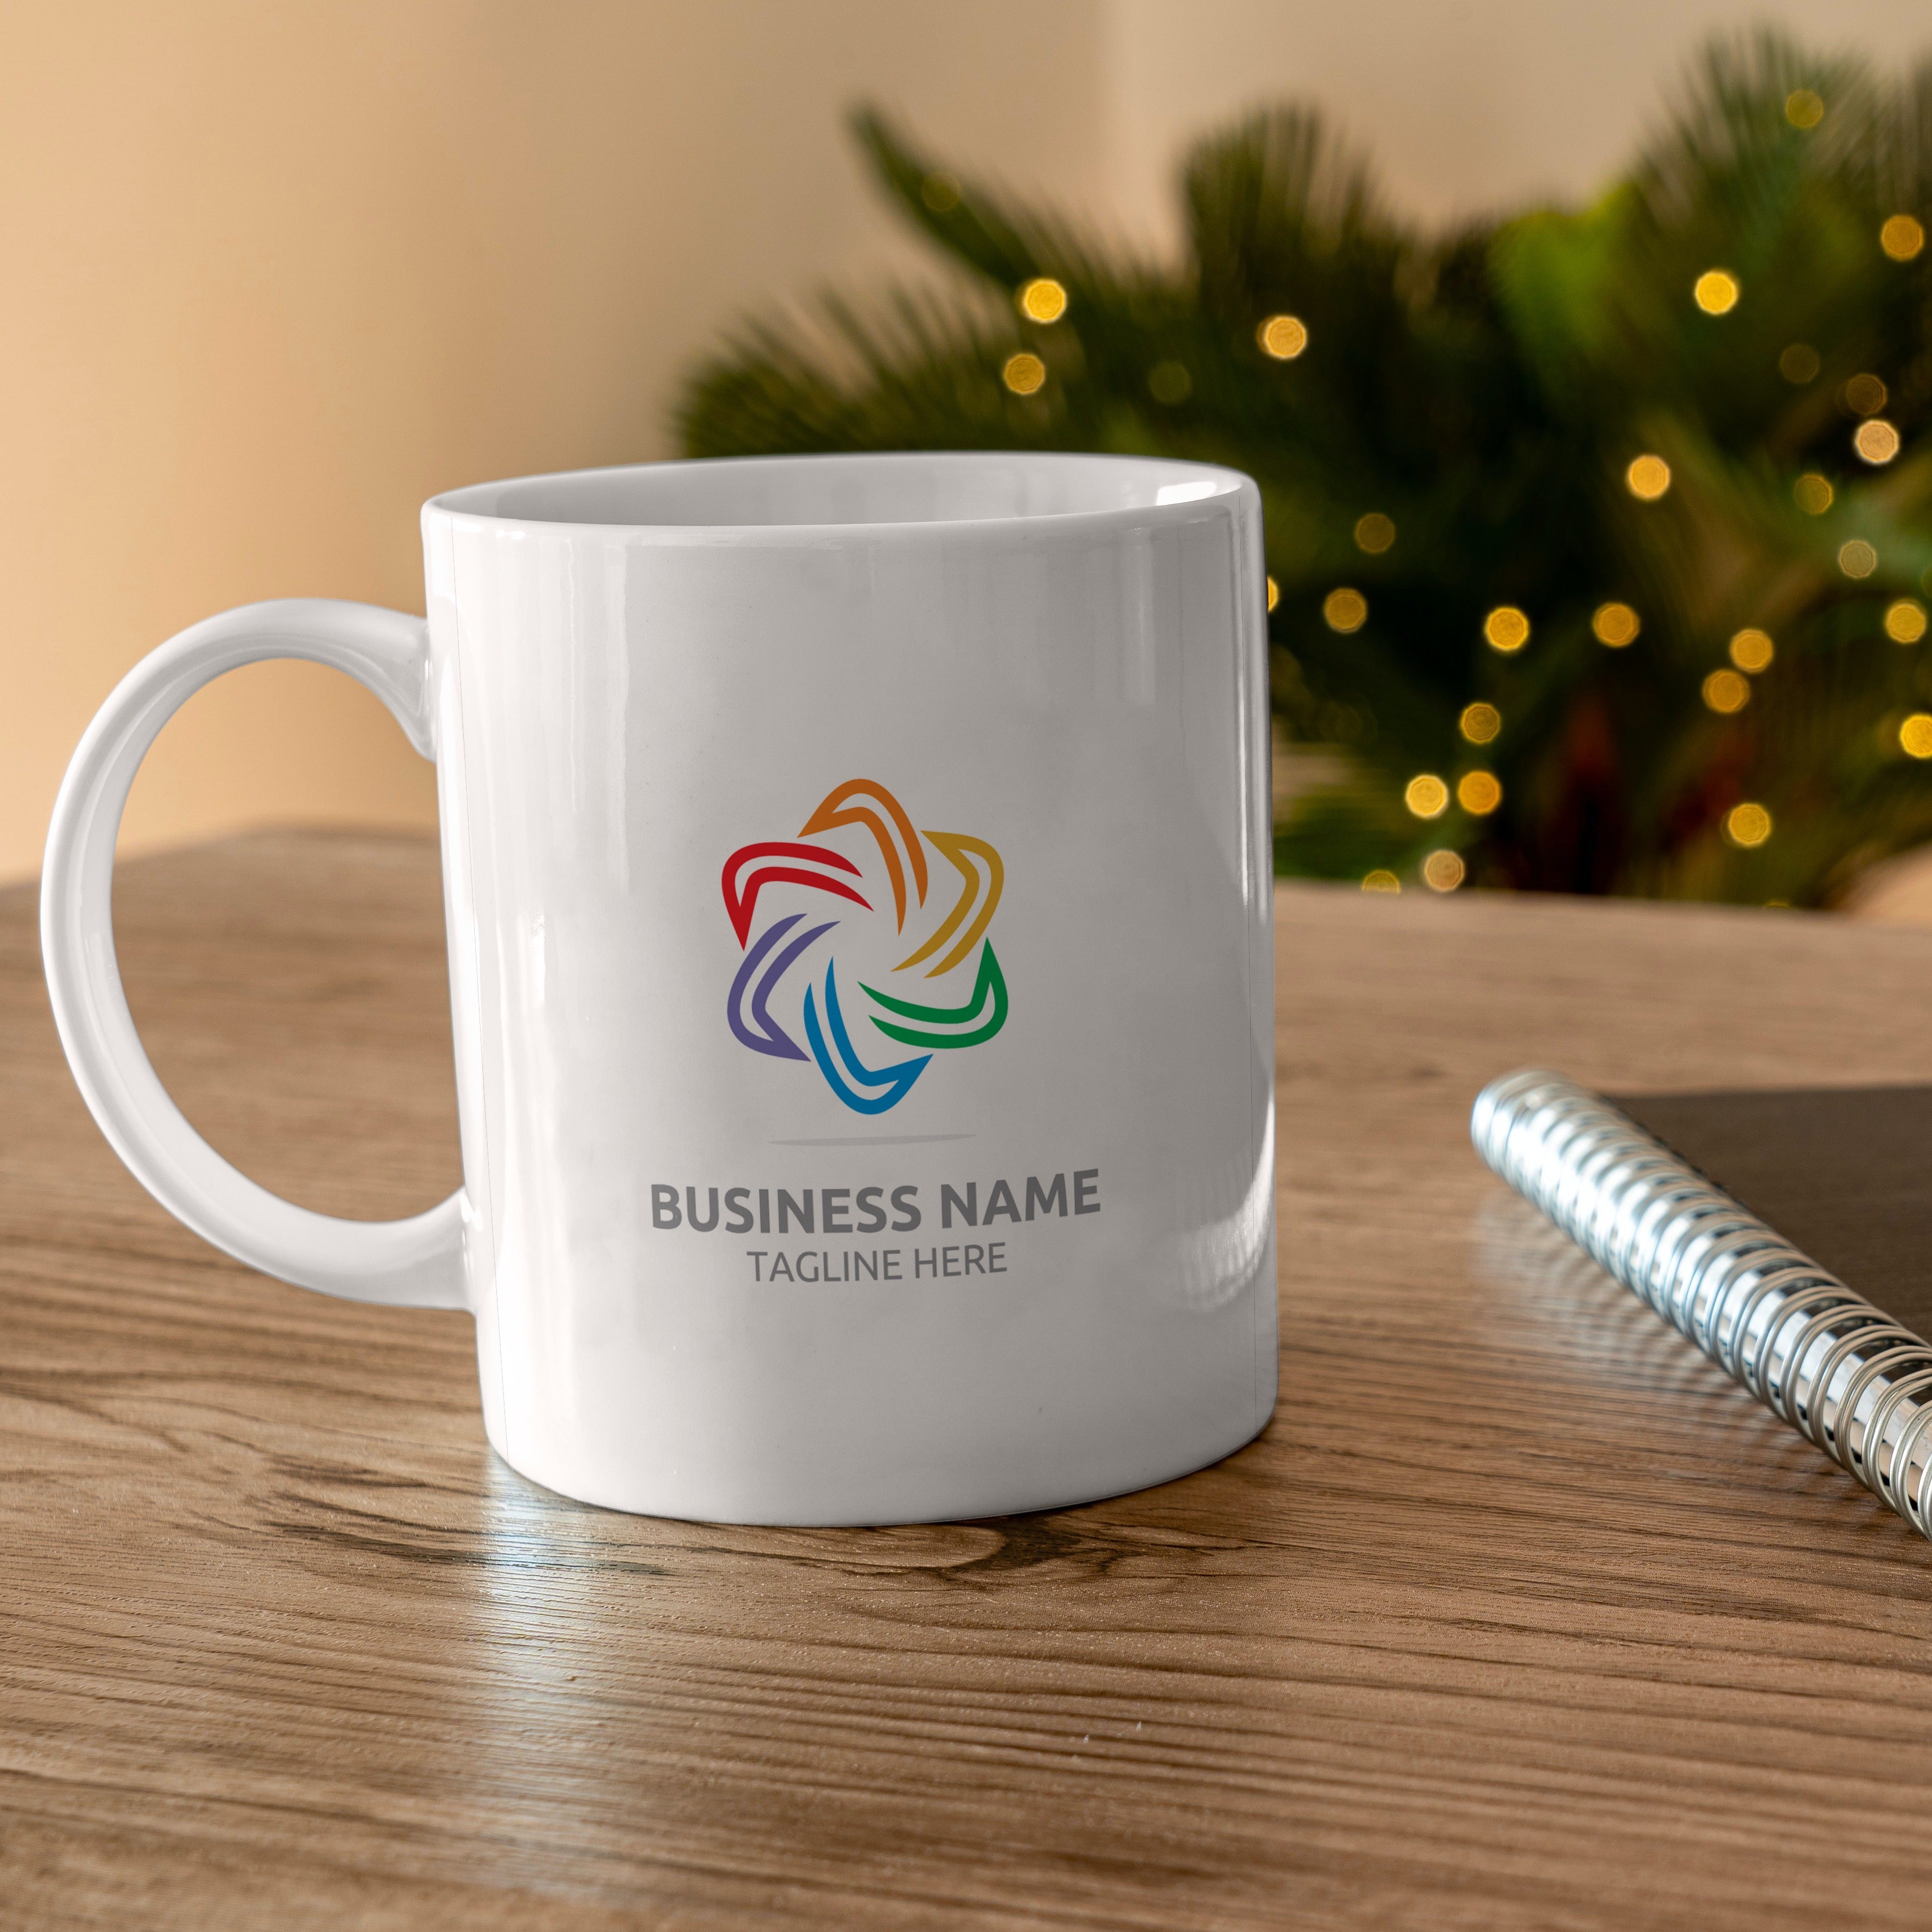 Logo printed mug business promotional Mug with logo